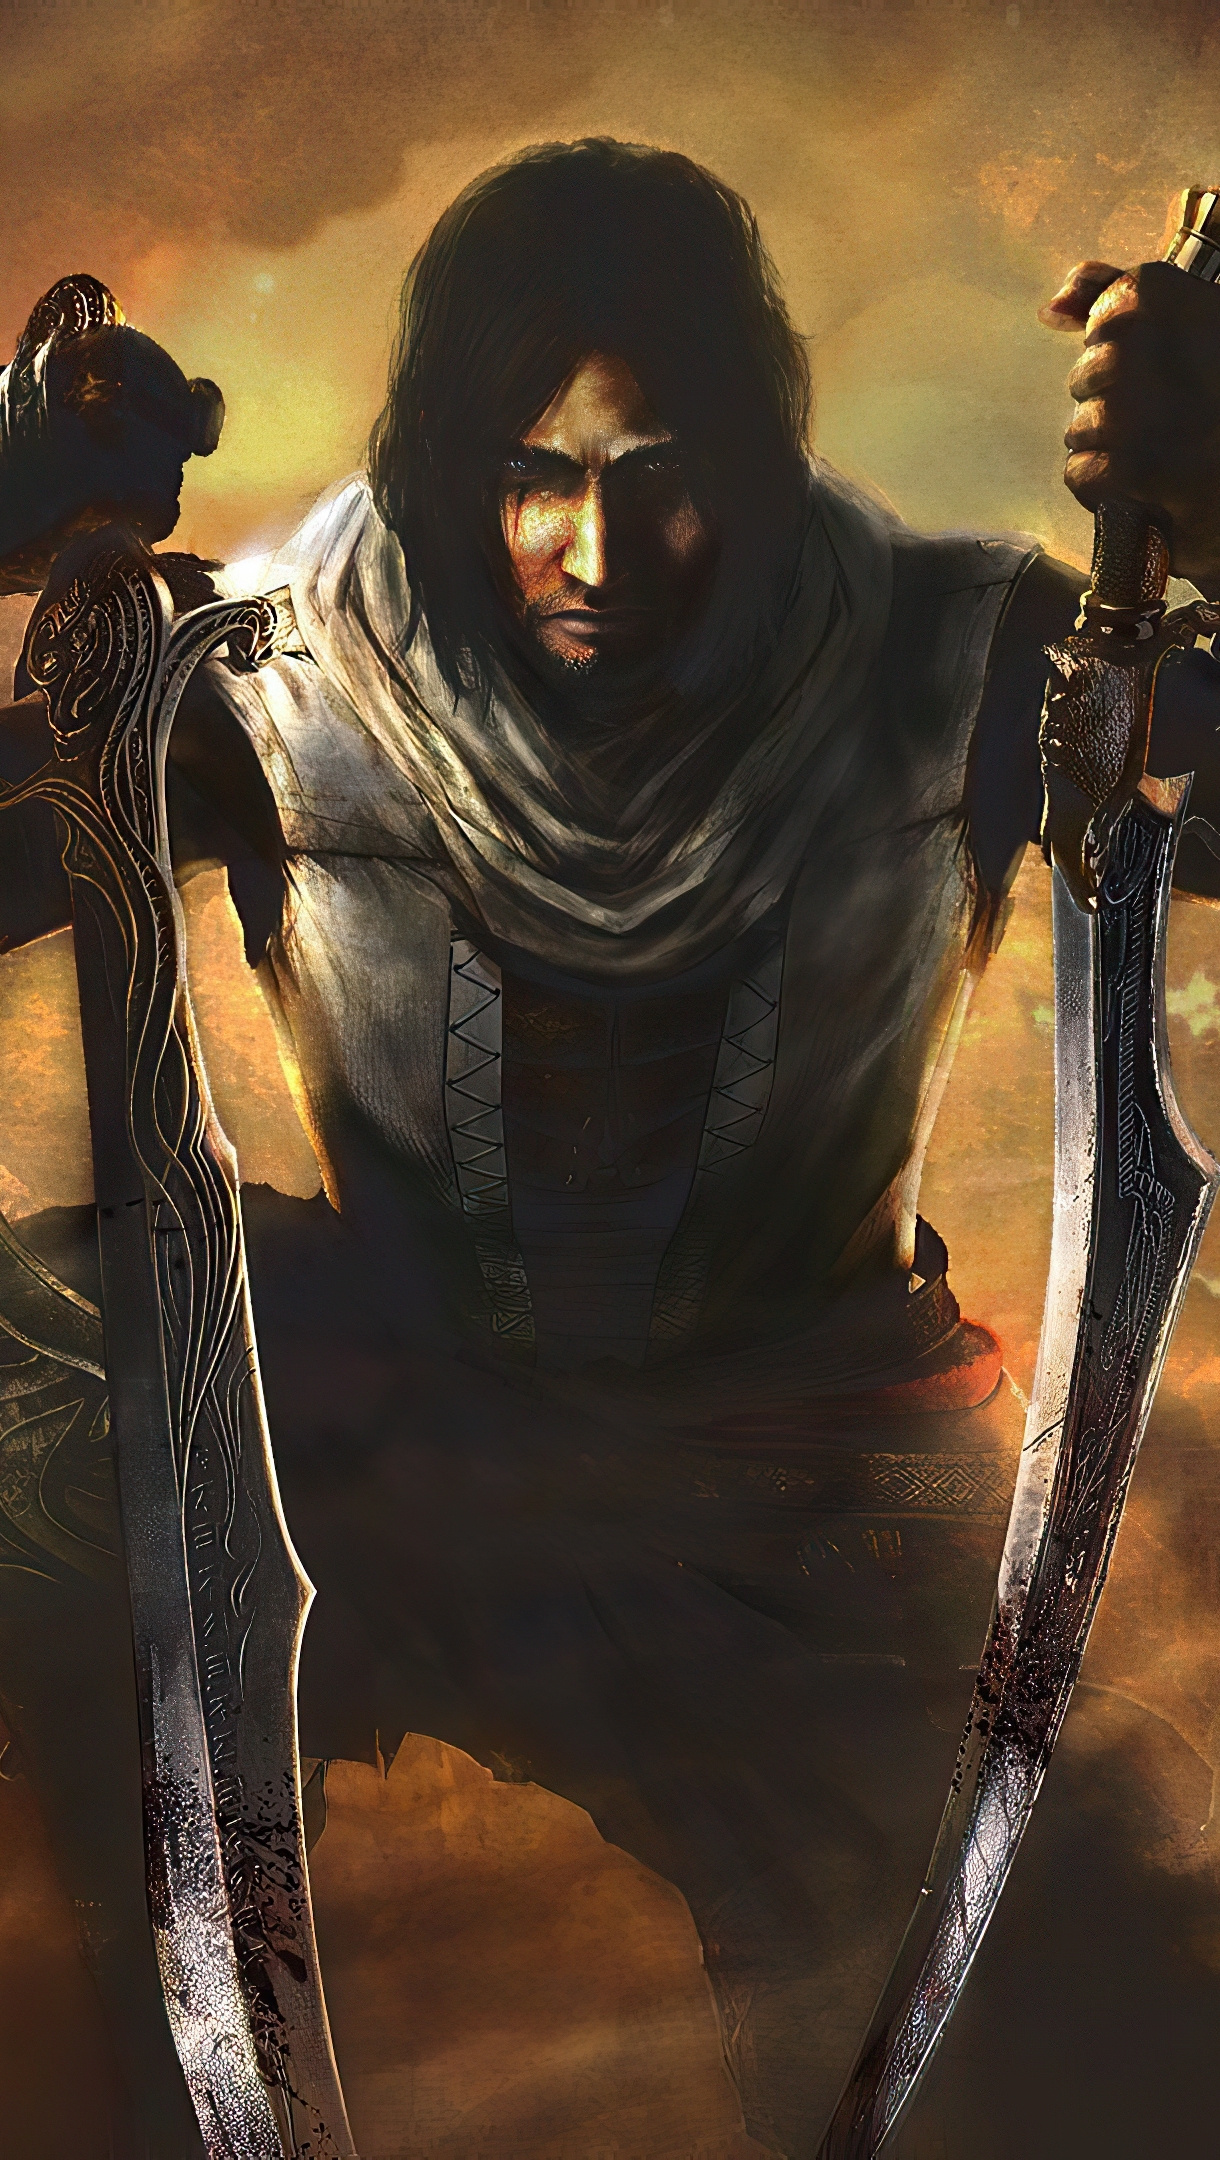 Wallpaper Prince of Persia 2020 Vertical